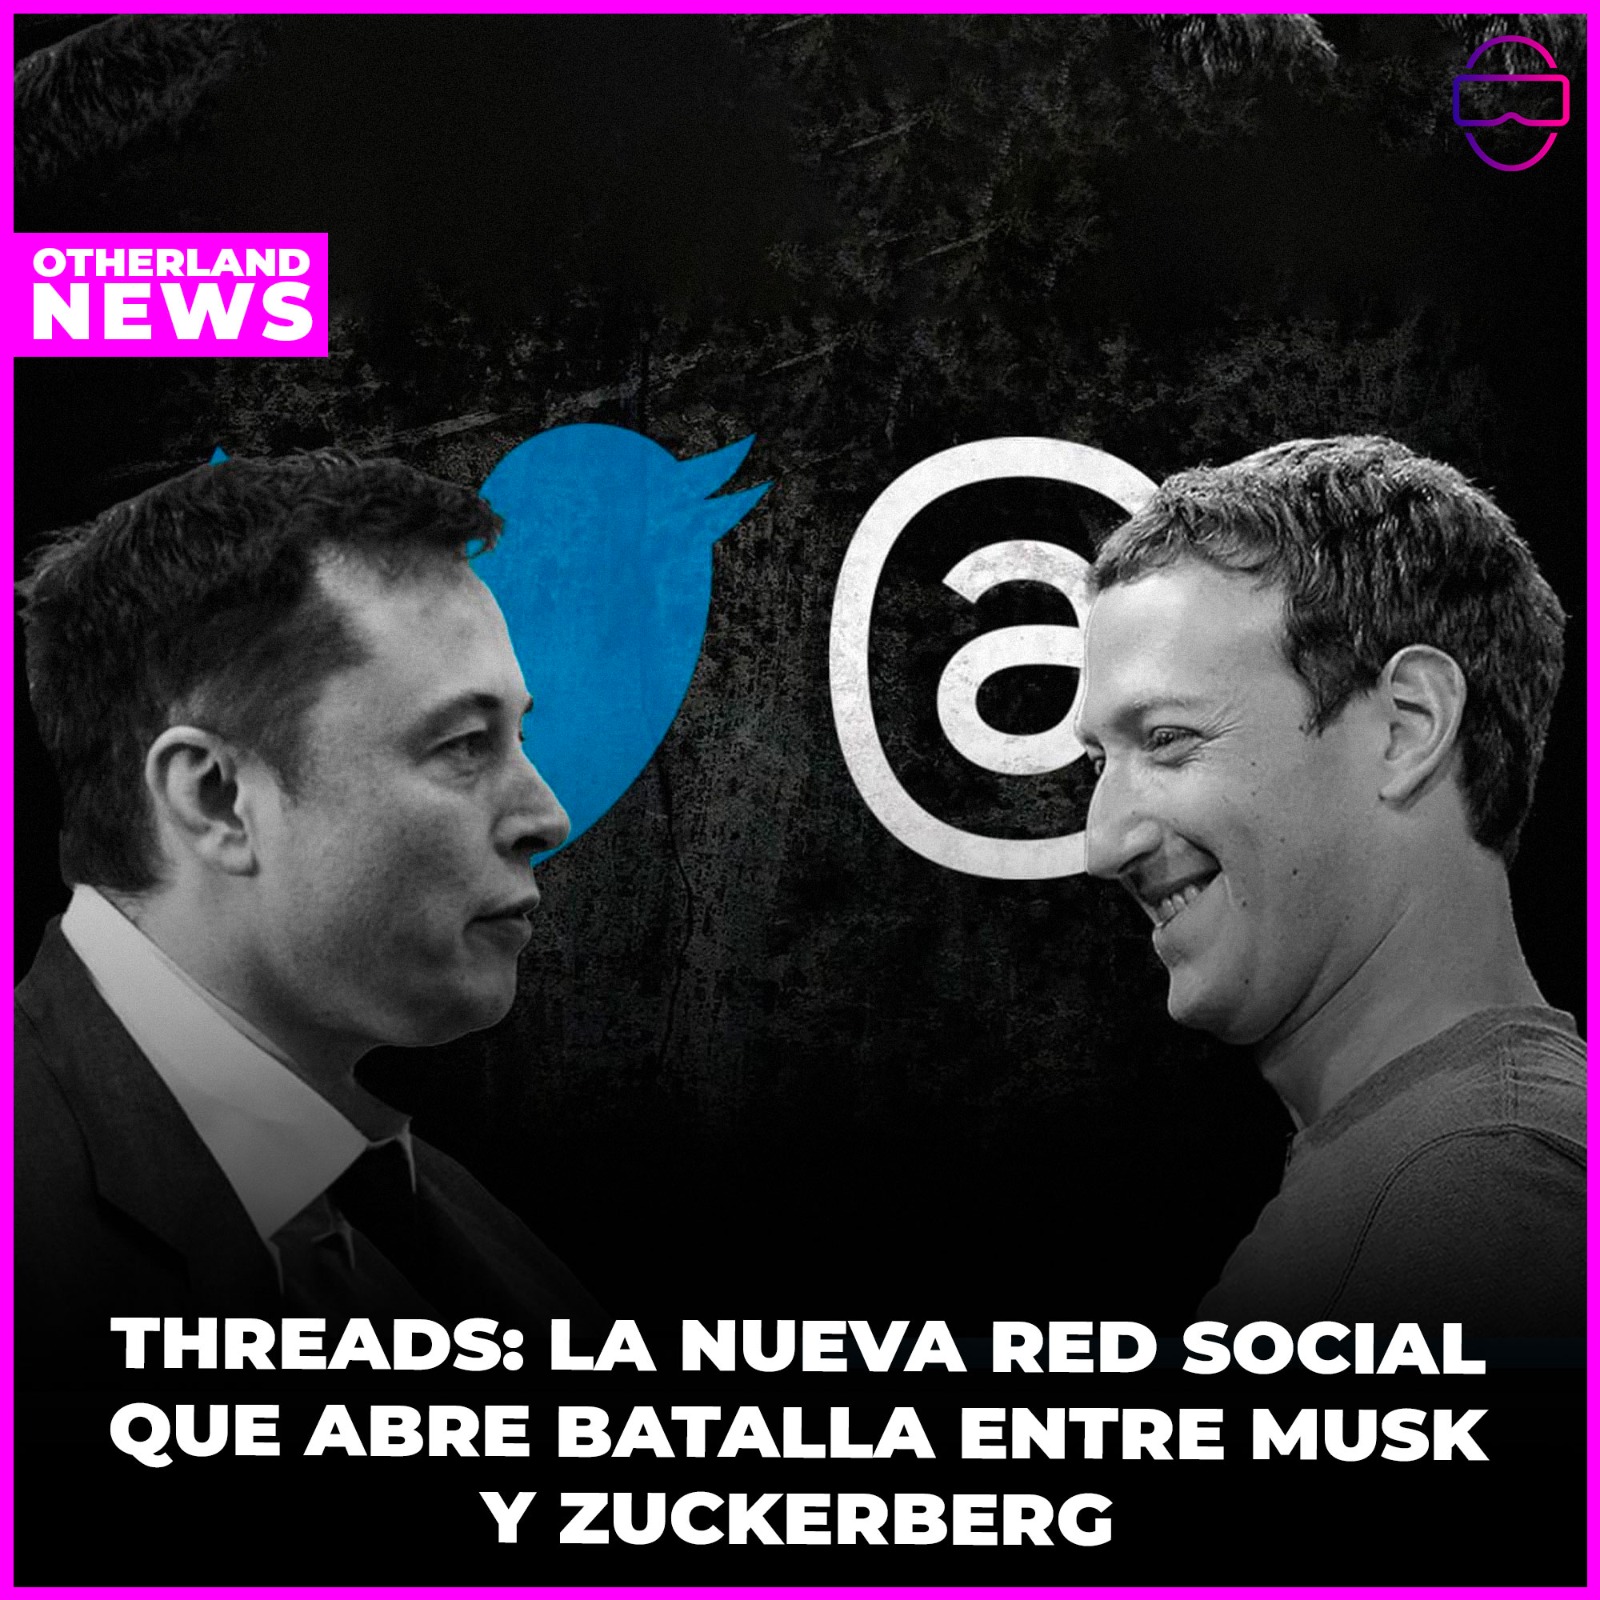 Otherland : Threads: La nueva Red Social de Zuckerberg que amenaza a Twitter, el ardiente comentario de Elon Musk y la Intrigante contratación de Yaccarino ¡Descubre las últimas tendencias digitales!